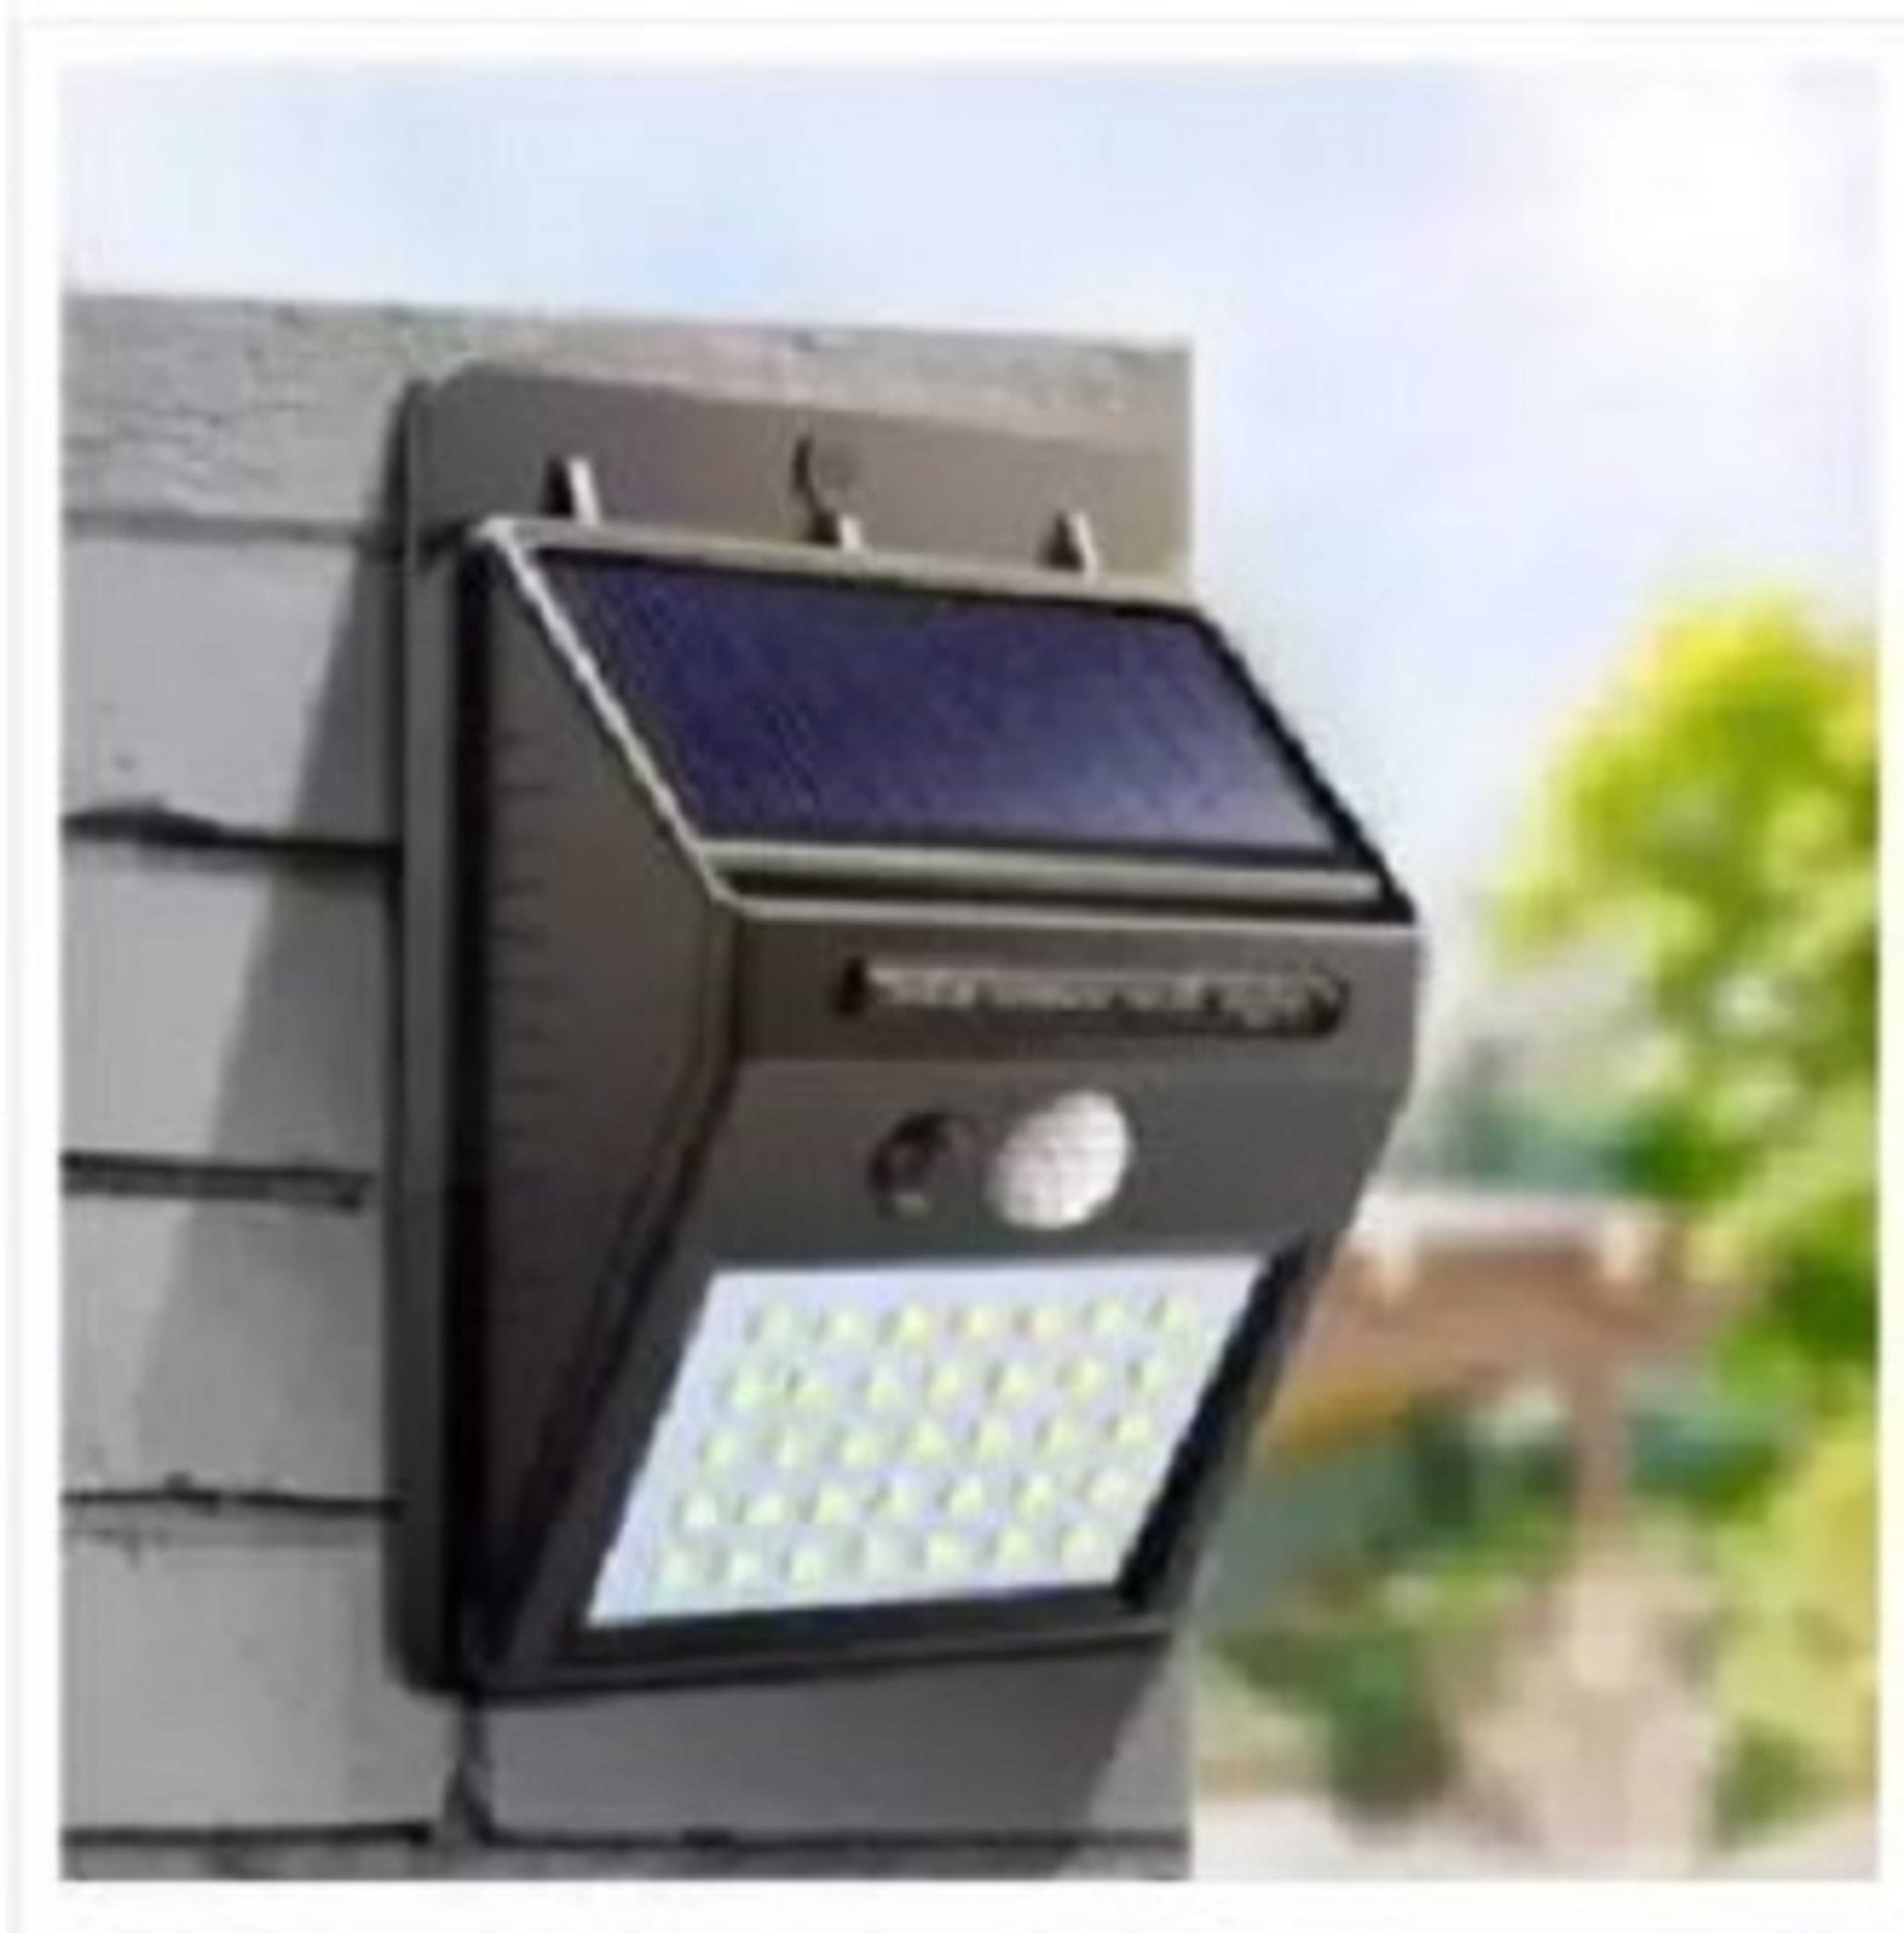 Solar LED street light for home garden fence best works